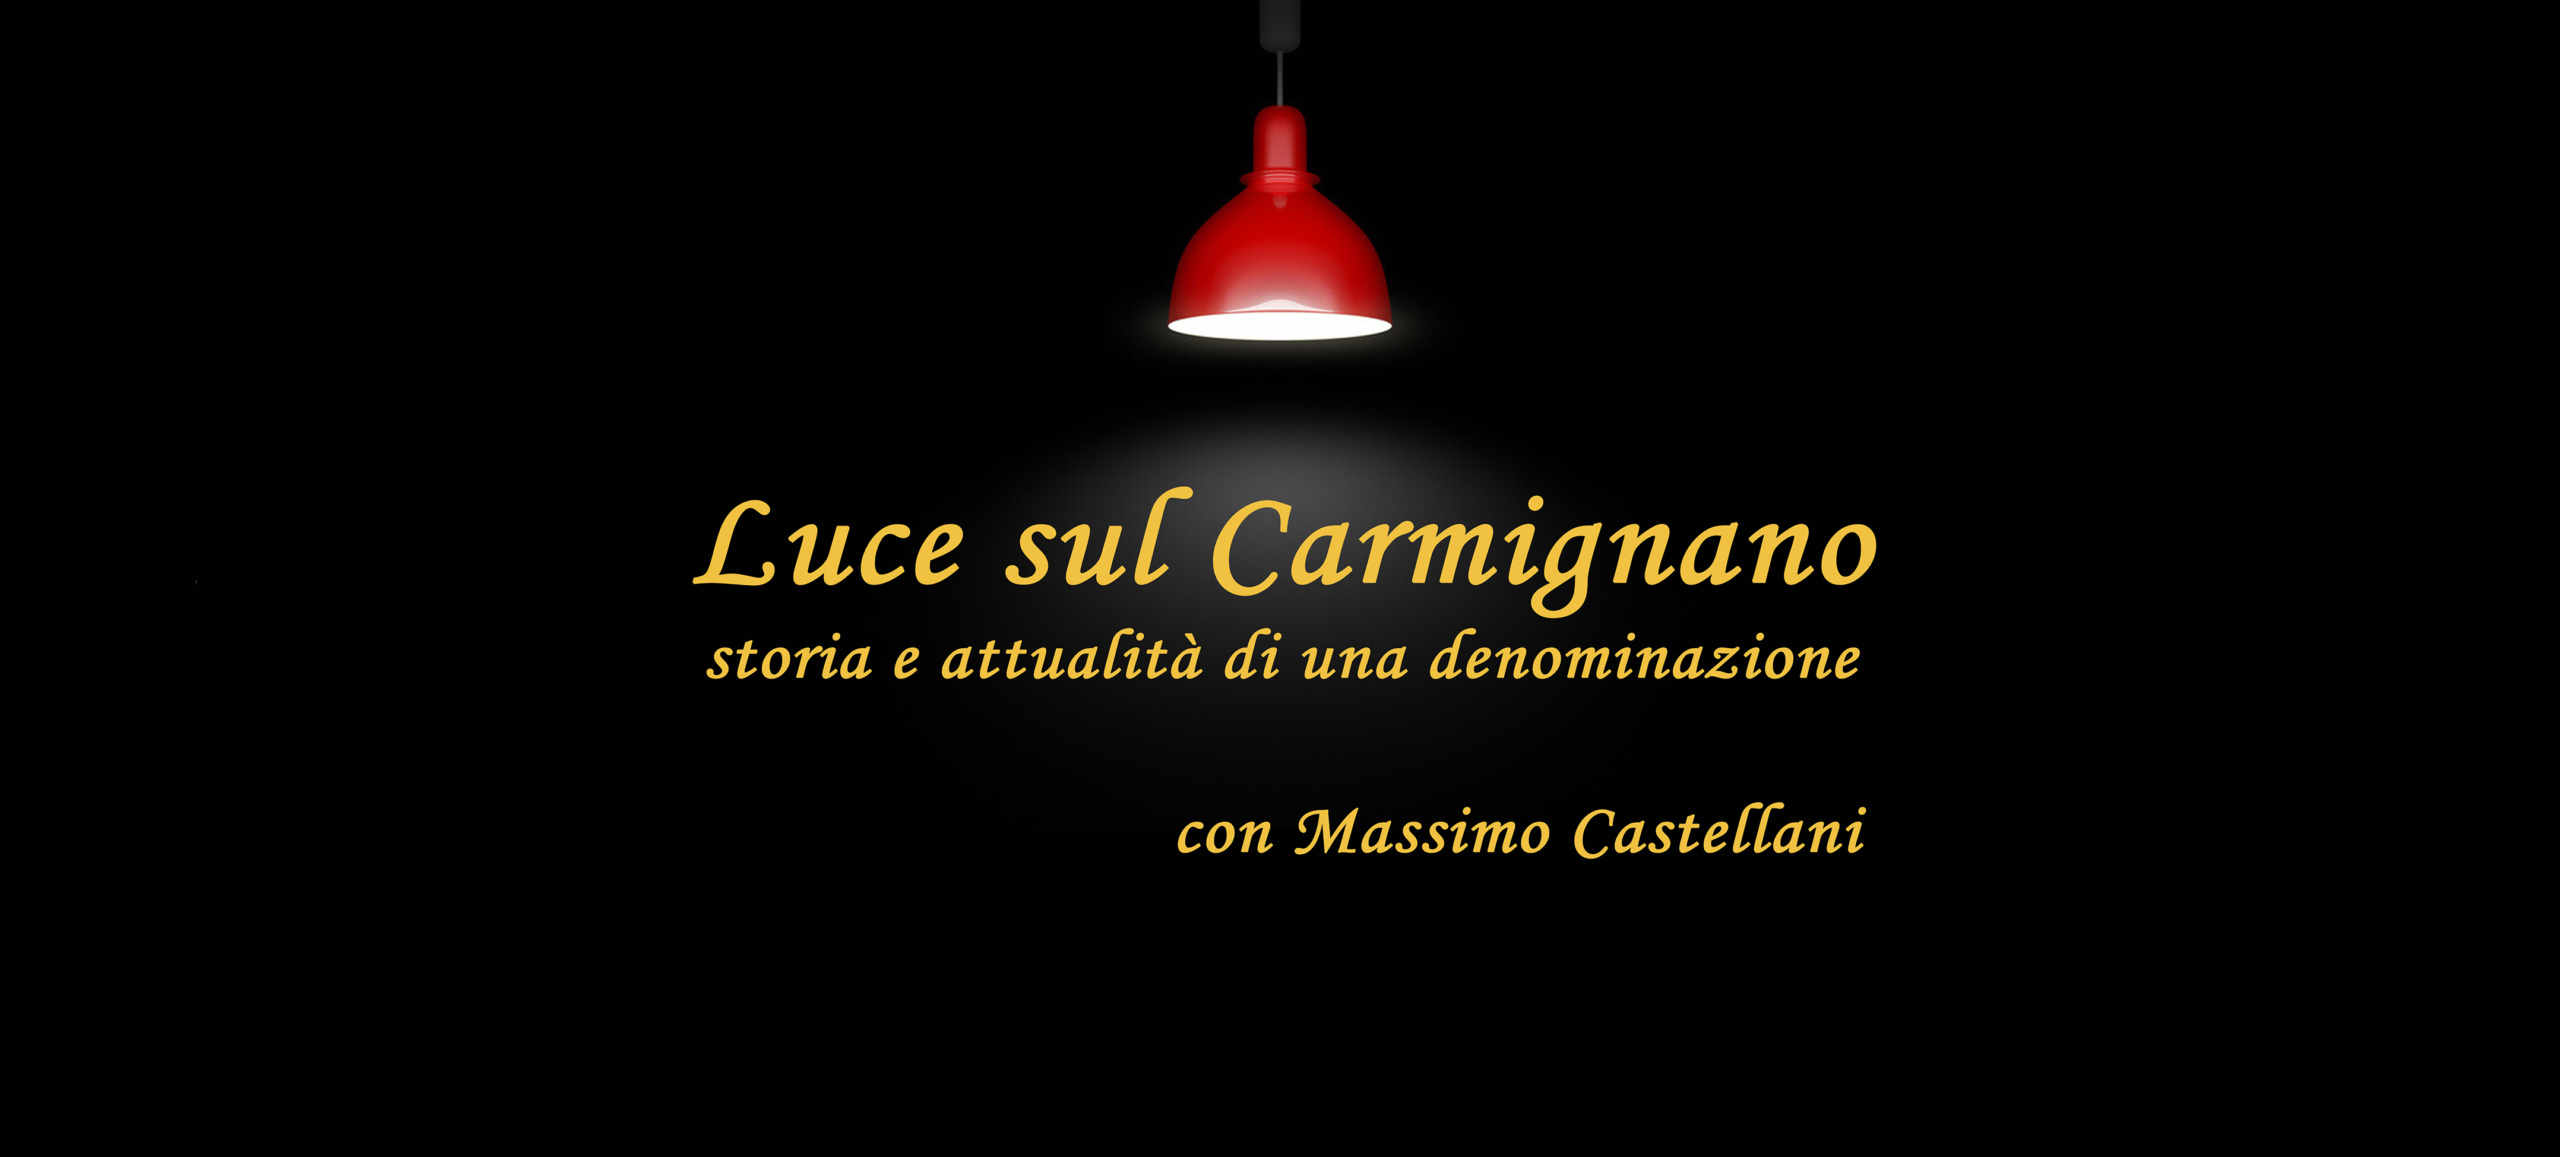 Luce sul Carmignano: storia e attualità di una denominazione